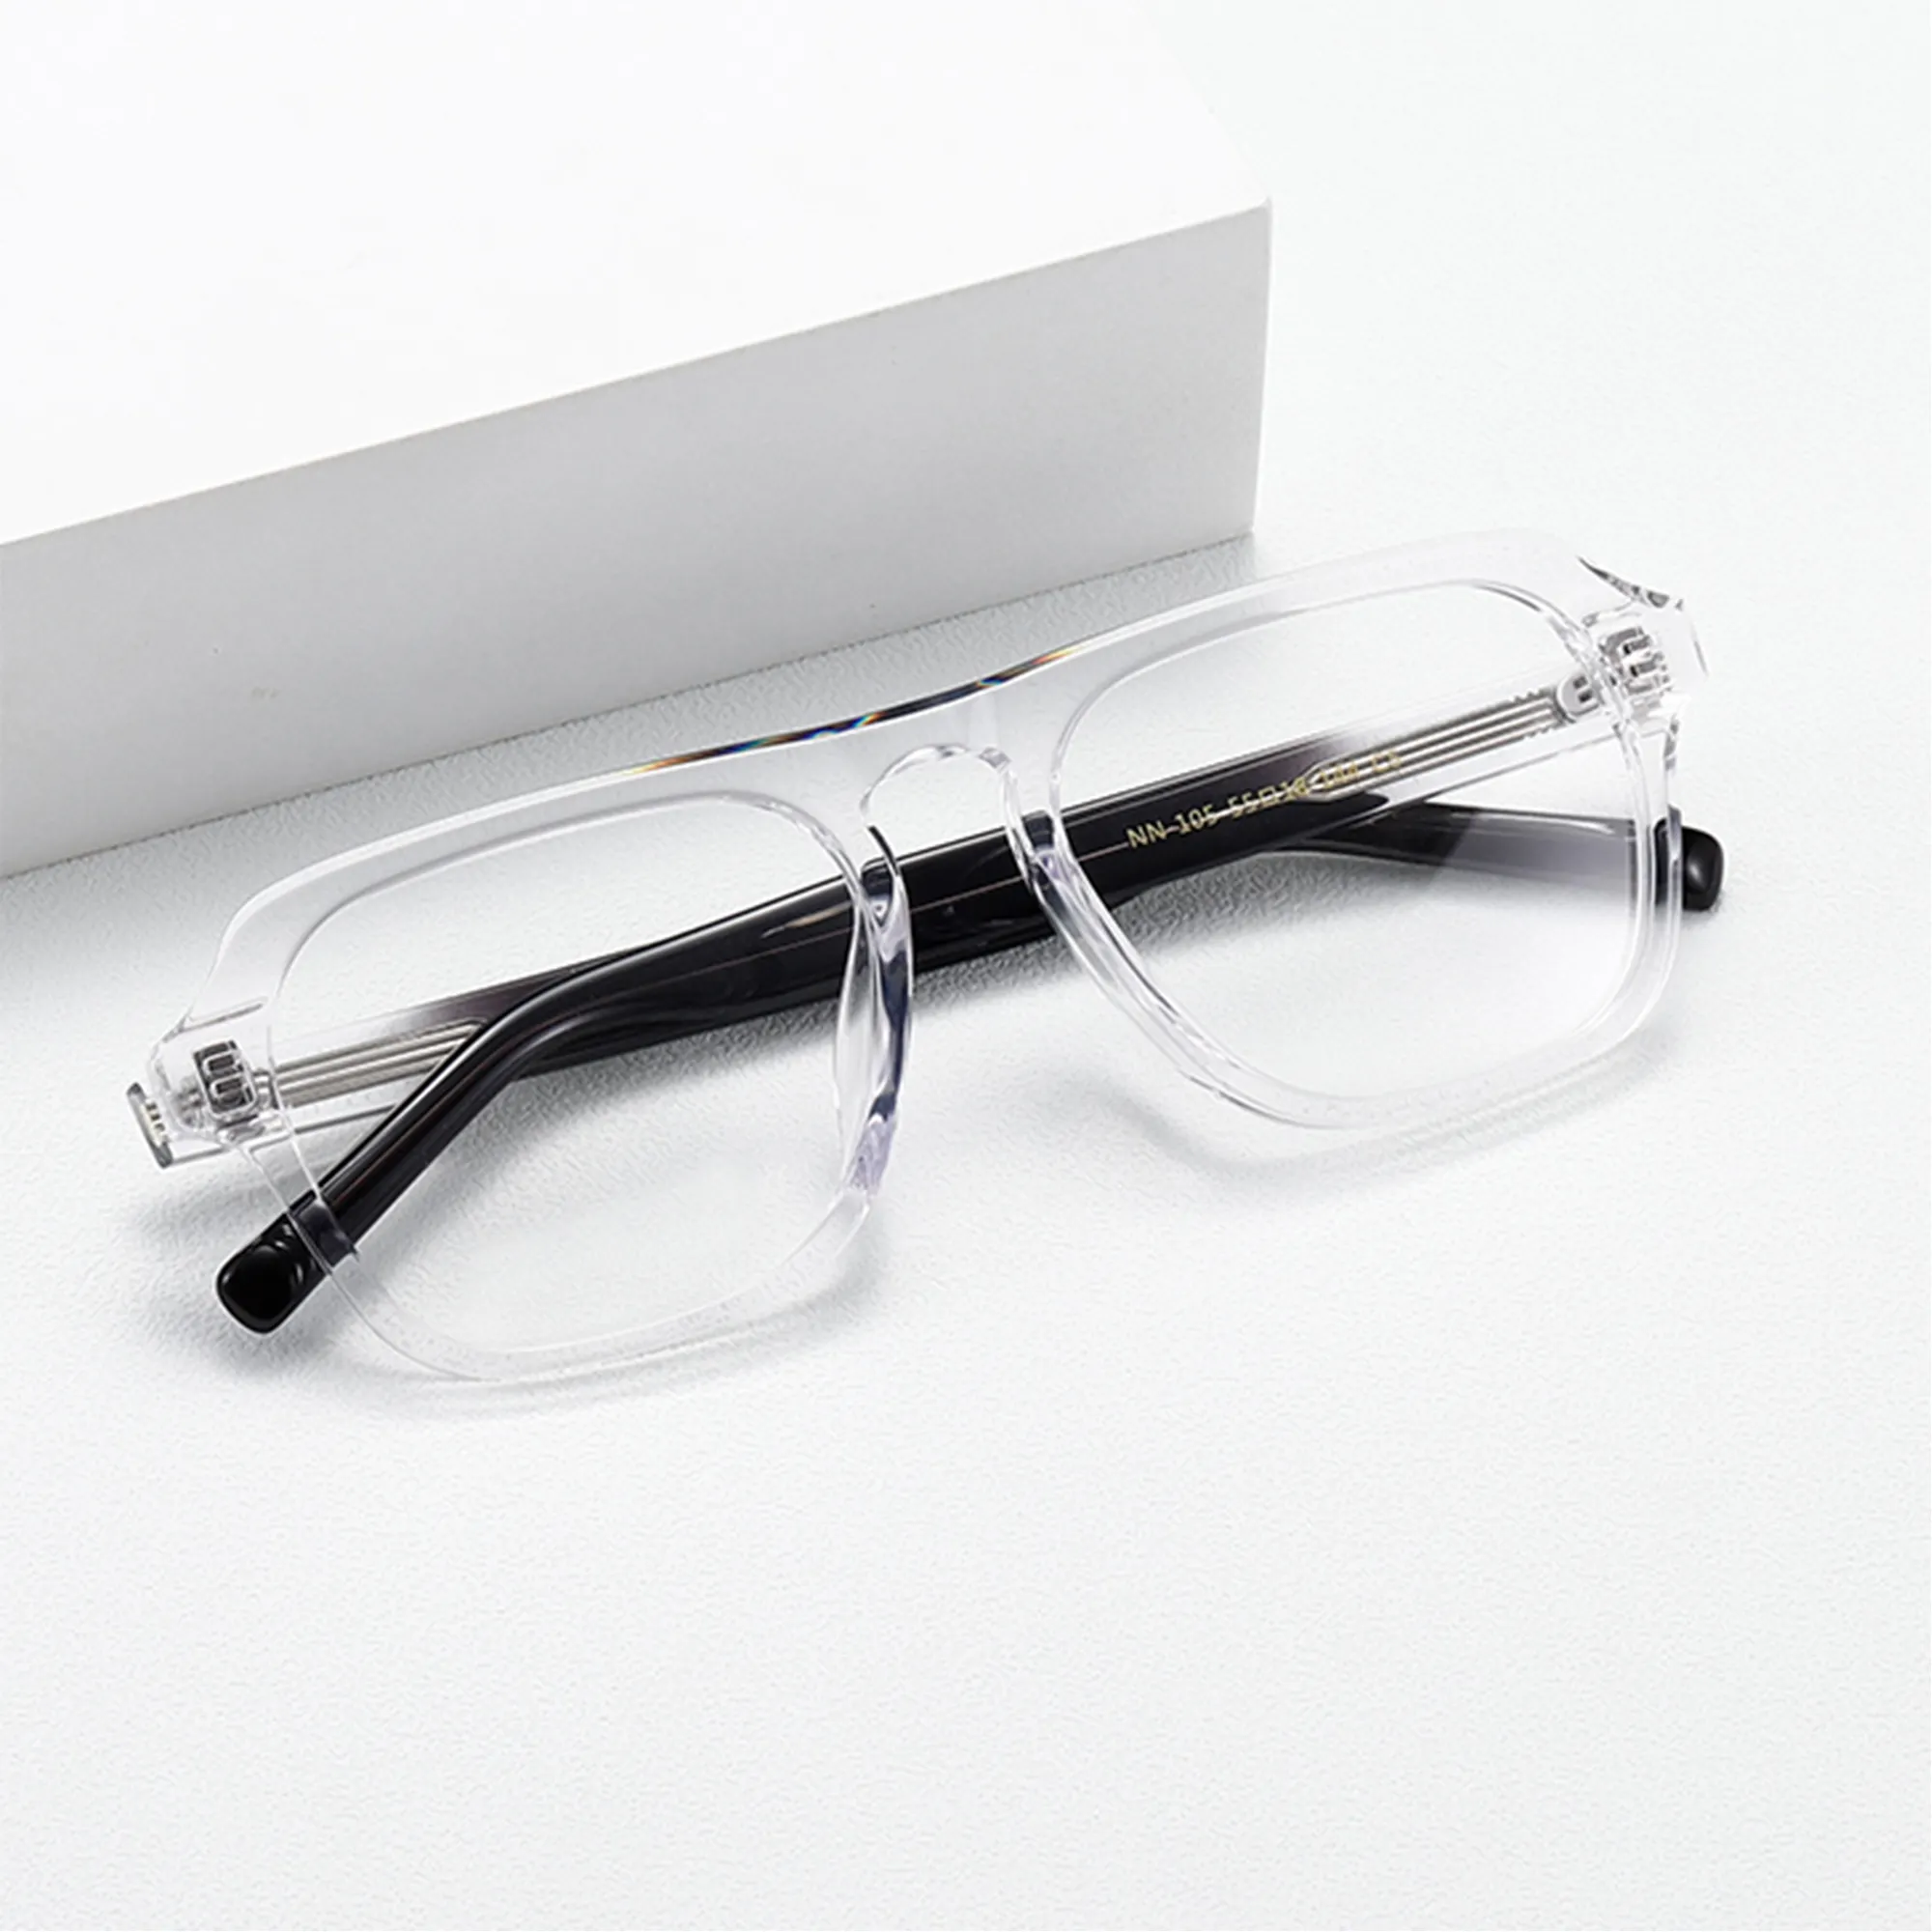 Figroad унисекс в наличии оптическая оправа для чтения оптических очков для мужчин Роскошные очки с рецептом